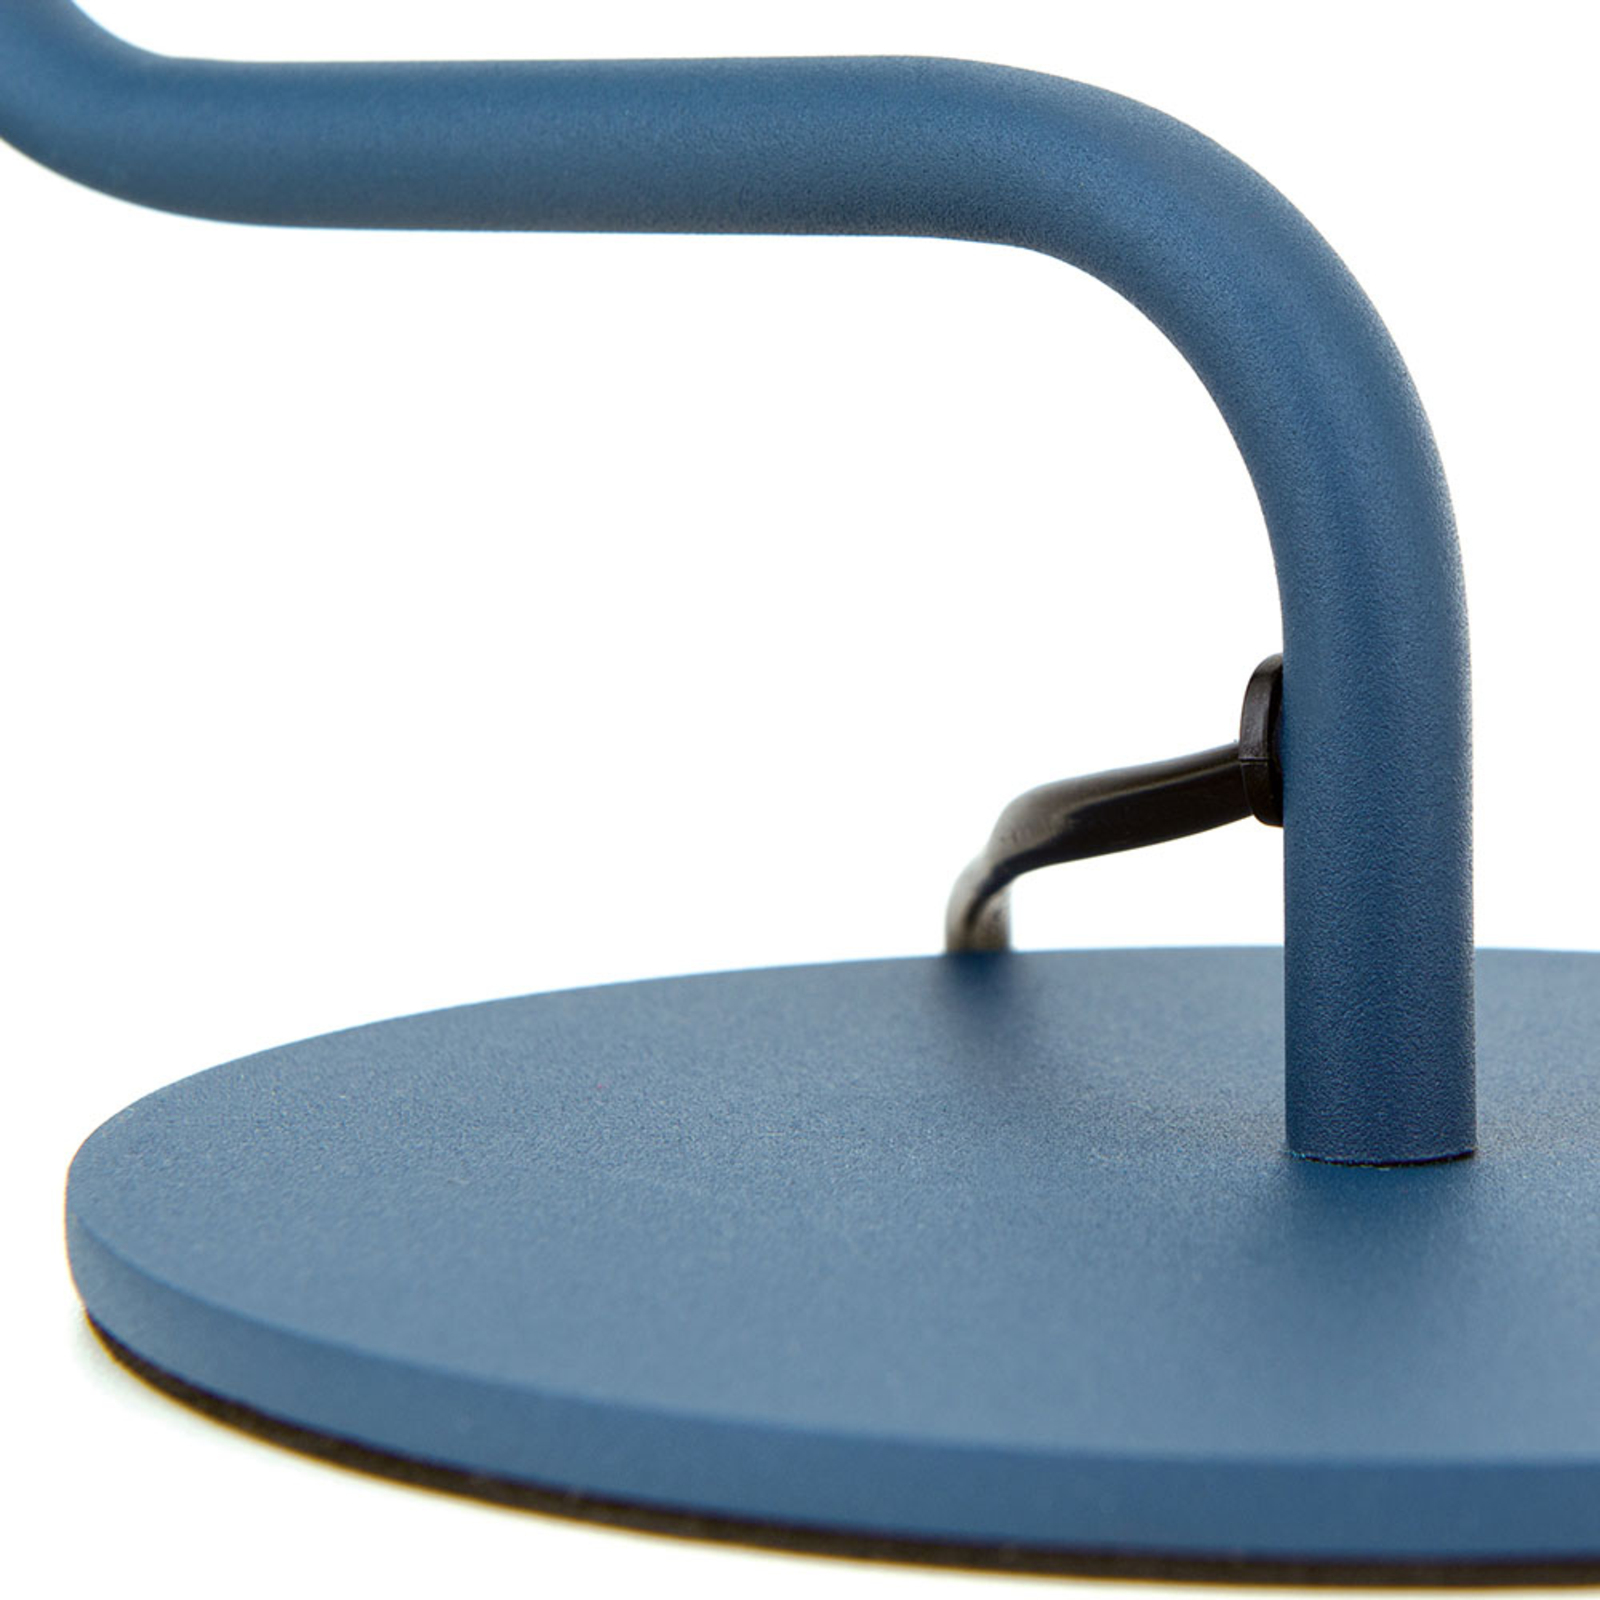 Viktoria desk lamp, adjustable head, blue